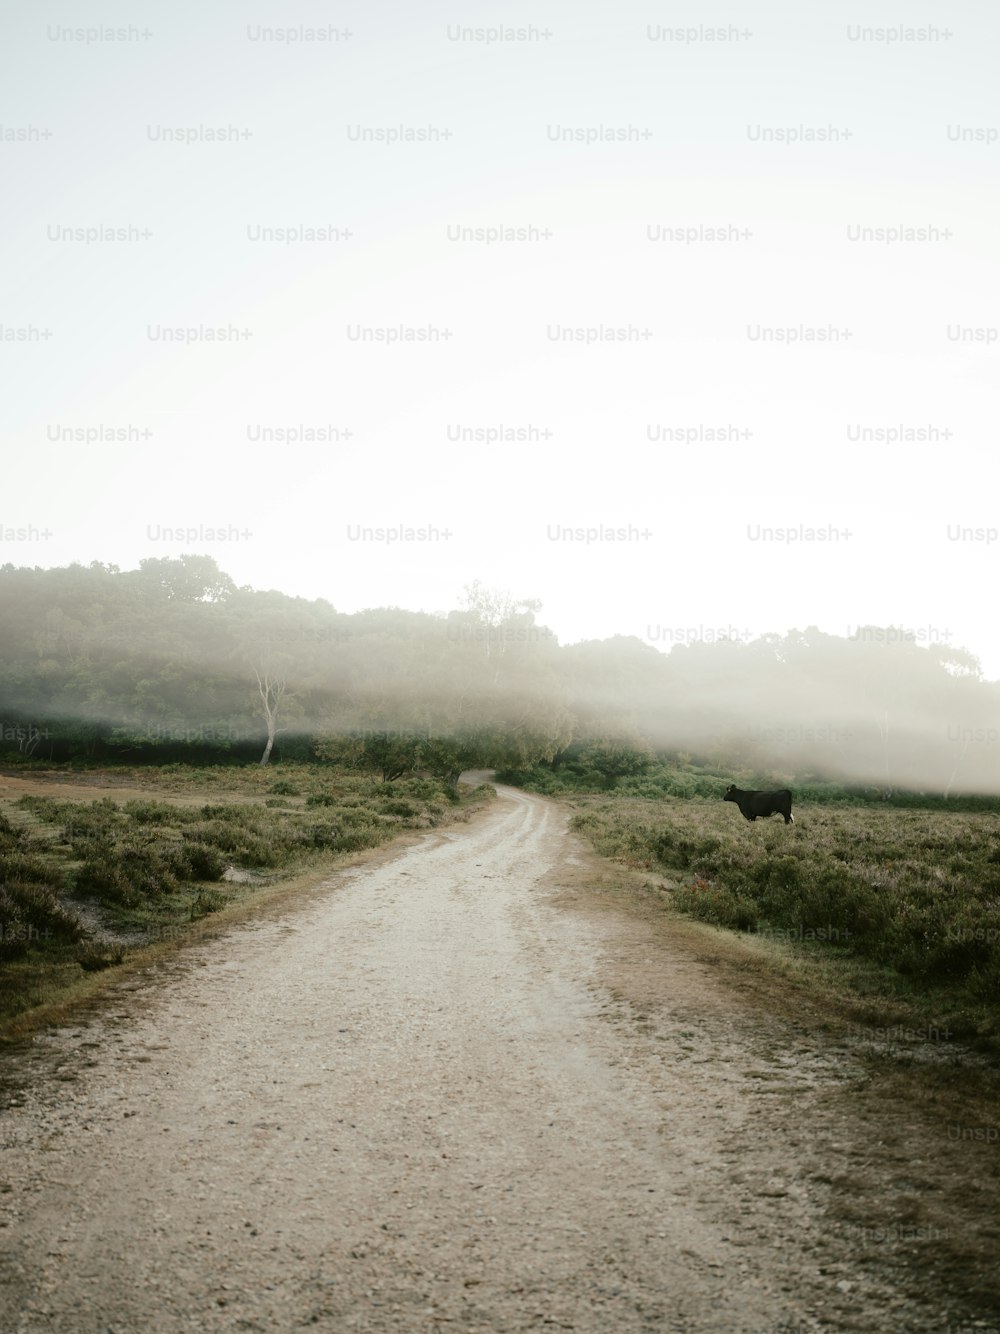 Una vaca parada en un camino de tierra en medio de un campo